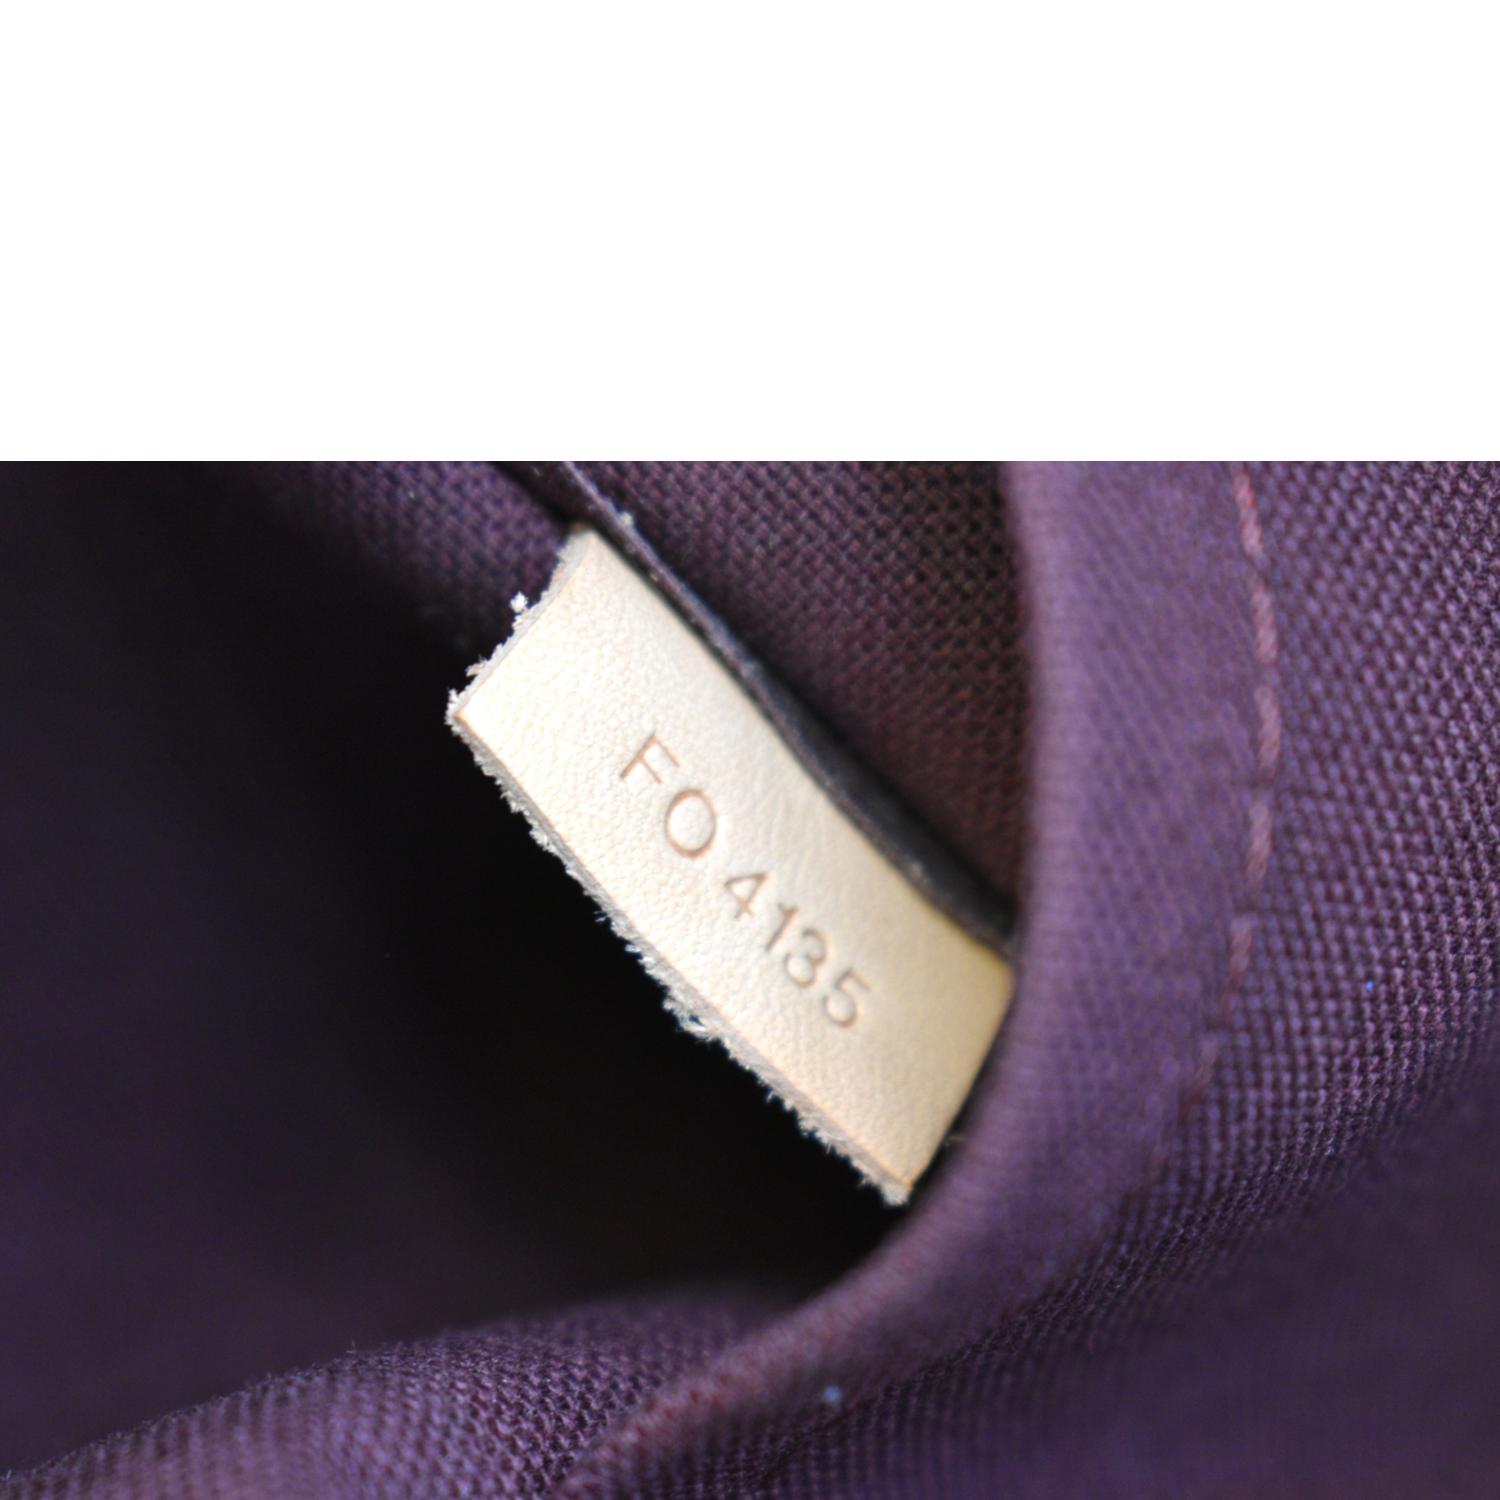 Louis Vuitton Segur NM Handbag Monogram Canvas - ShopStyle